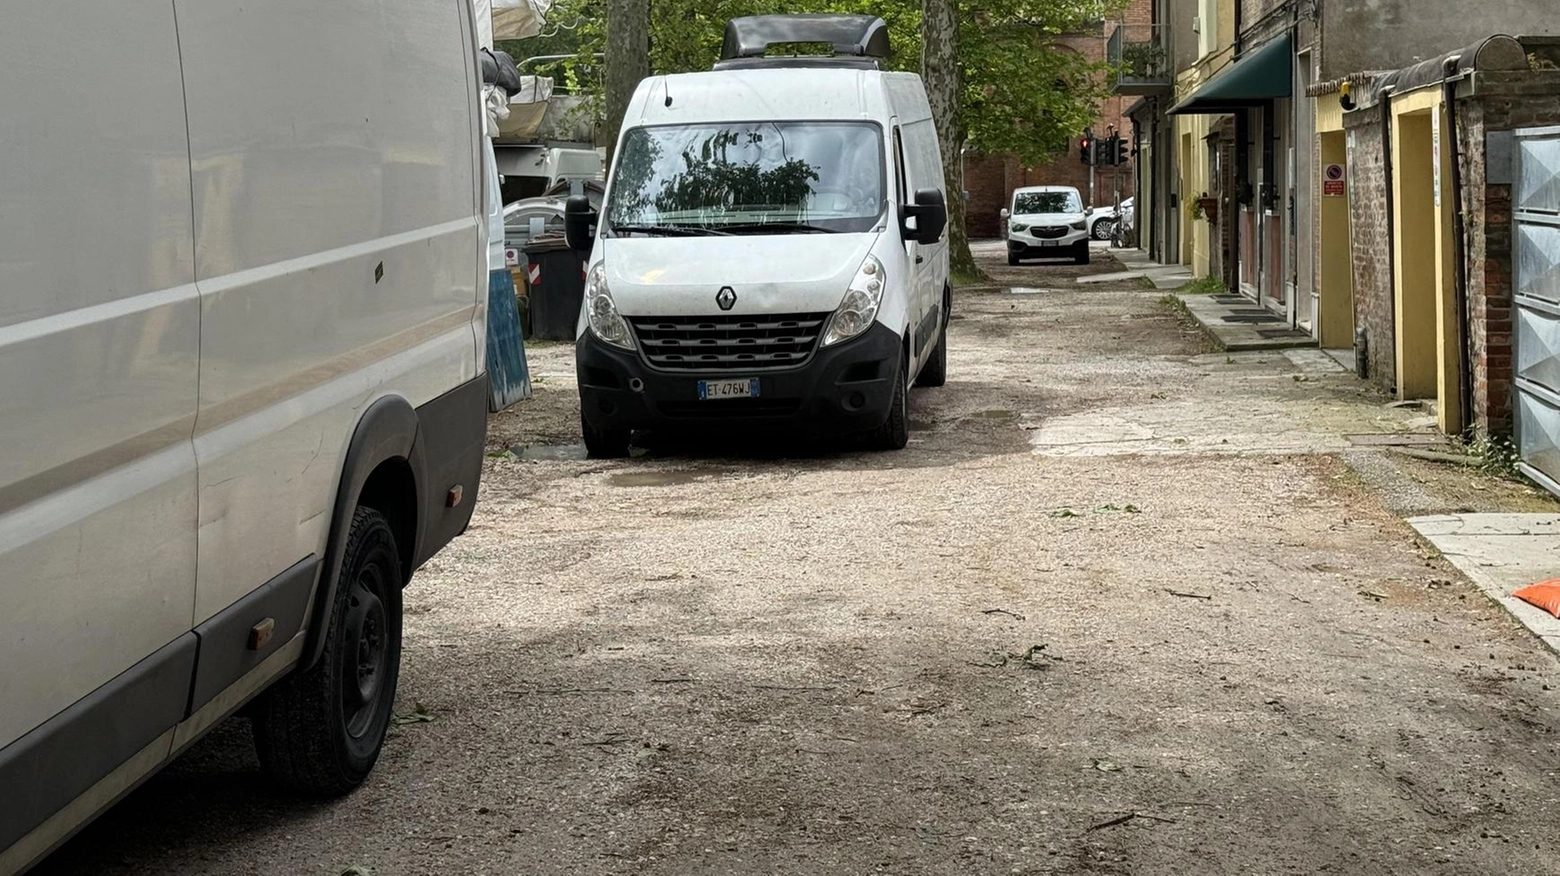 "Viale Alfonso d’Este, furgoni parcheggiati violando l’ordinanza"